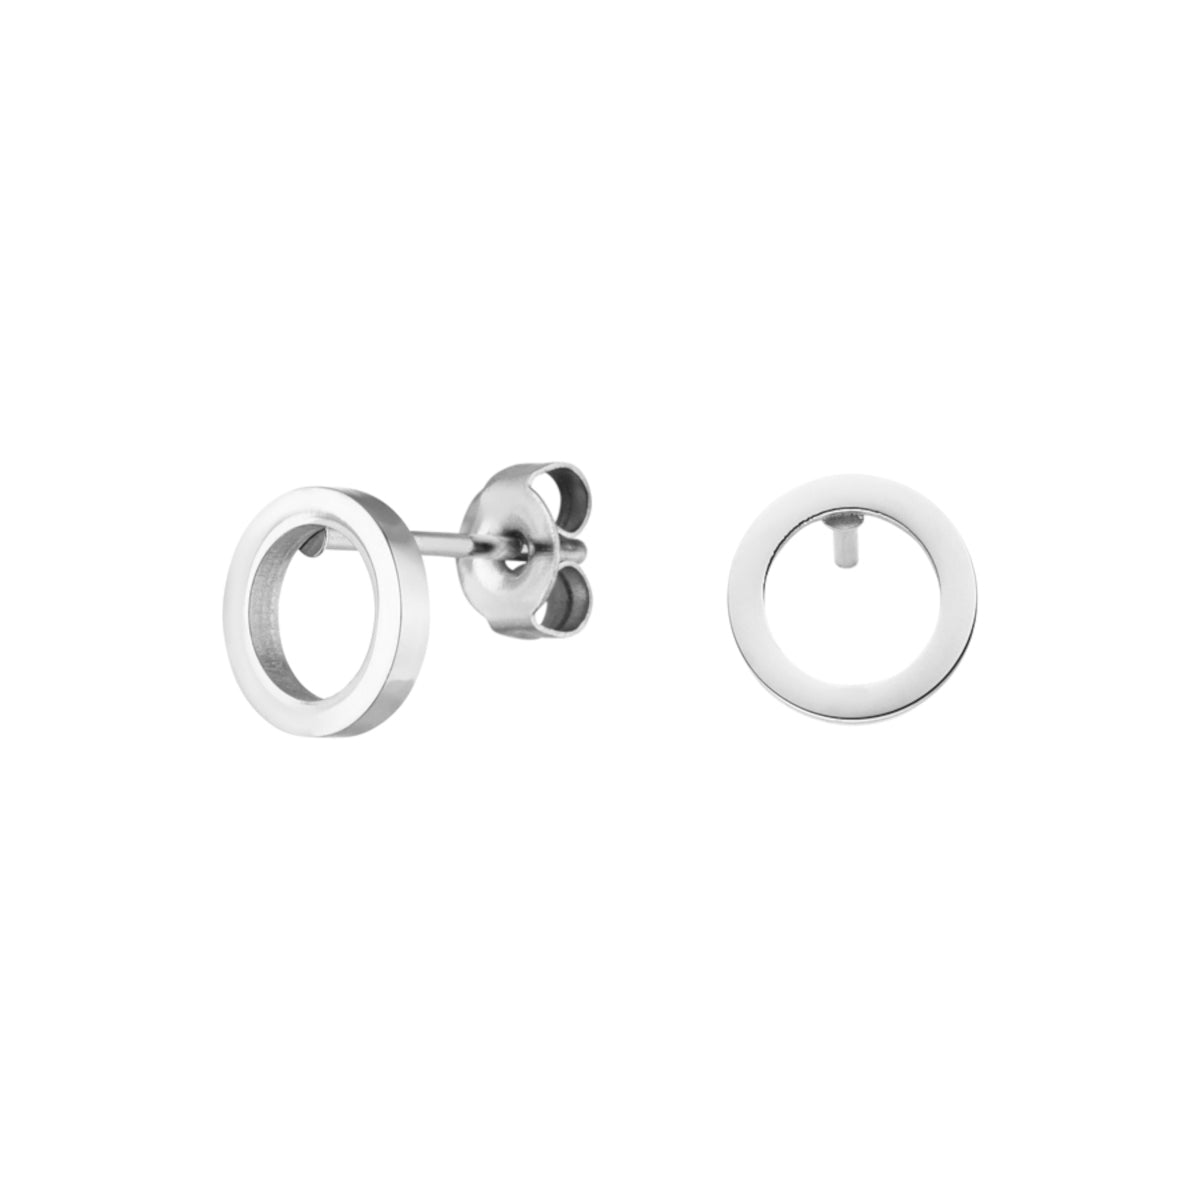 Dezente Kreis Ohrringe in Silber aus Edelstahl